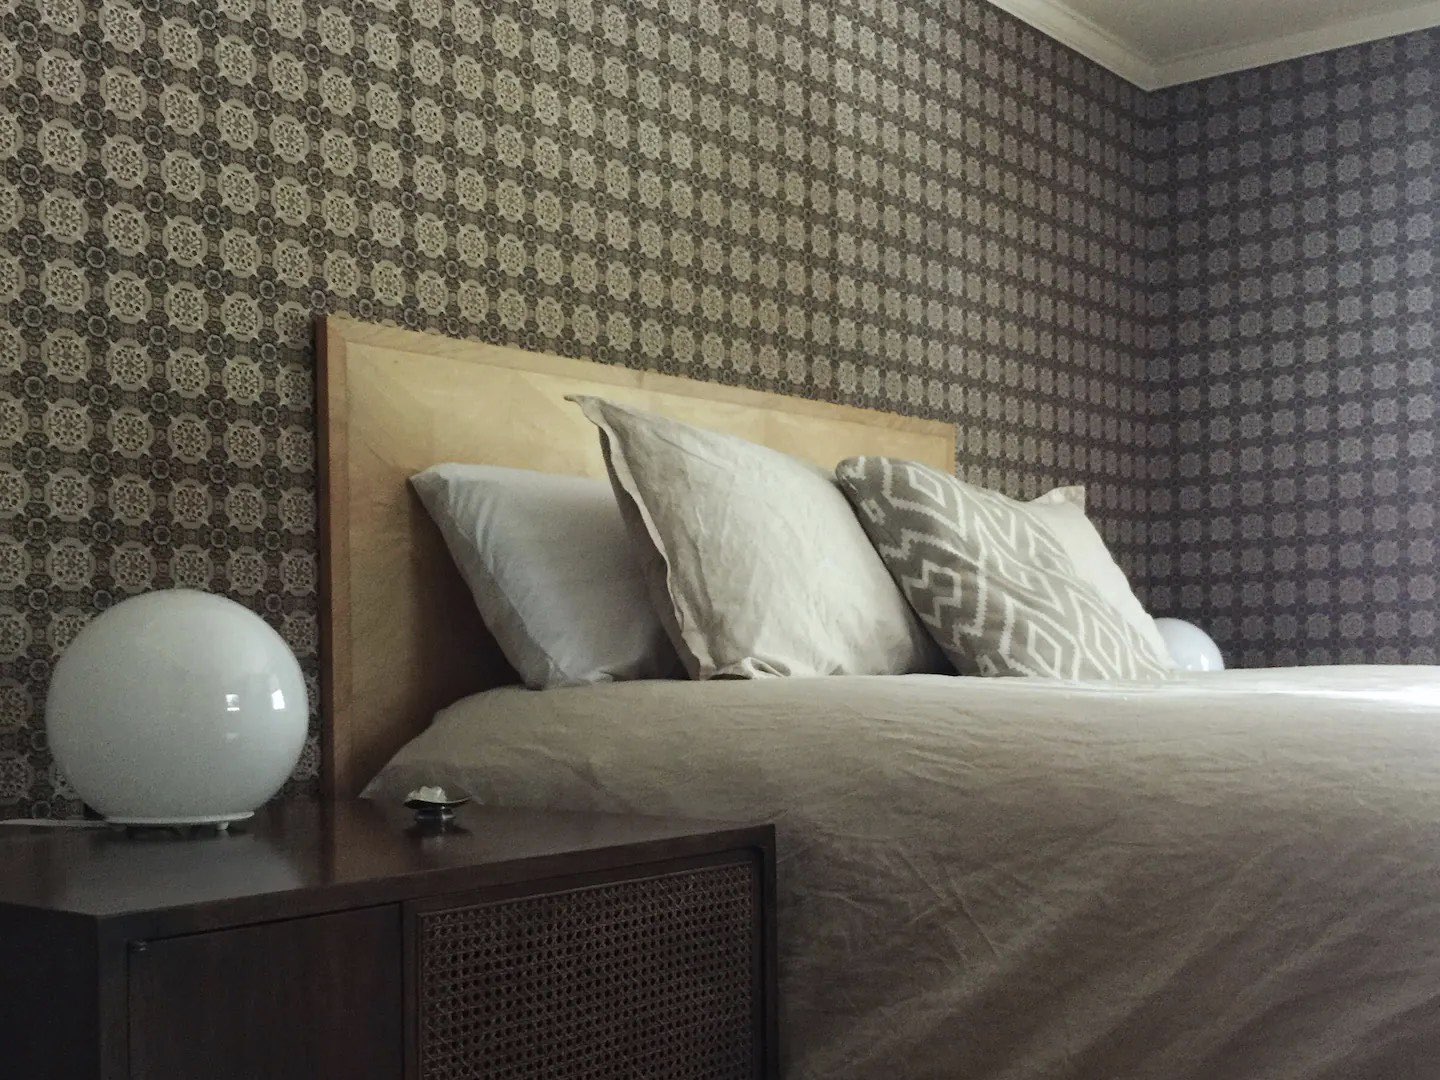 visite deco appartement mid century modern tête de lit cuir beige lampe de chevet globe en verre blanc table de nuit chambre vintage épurée